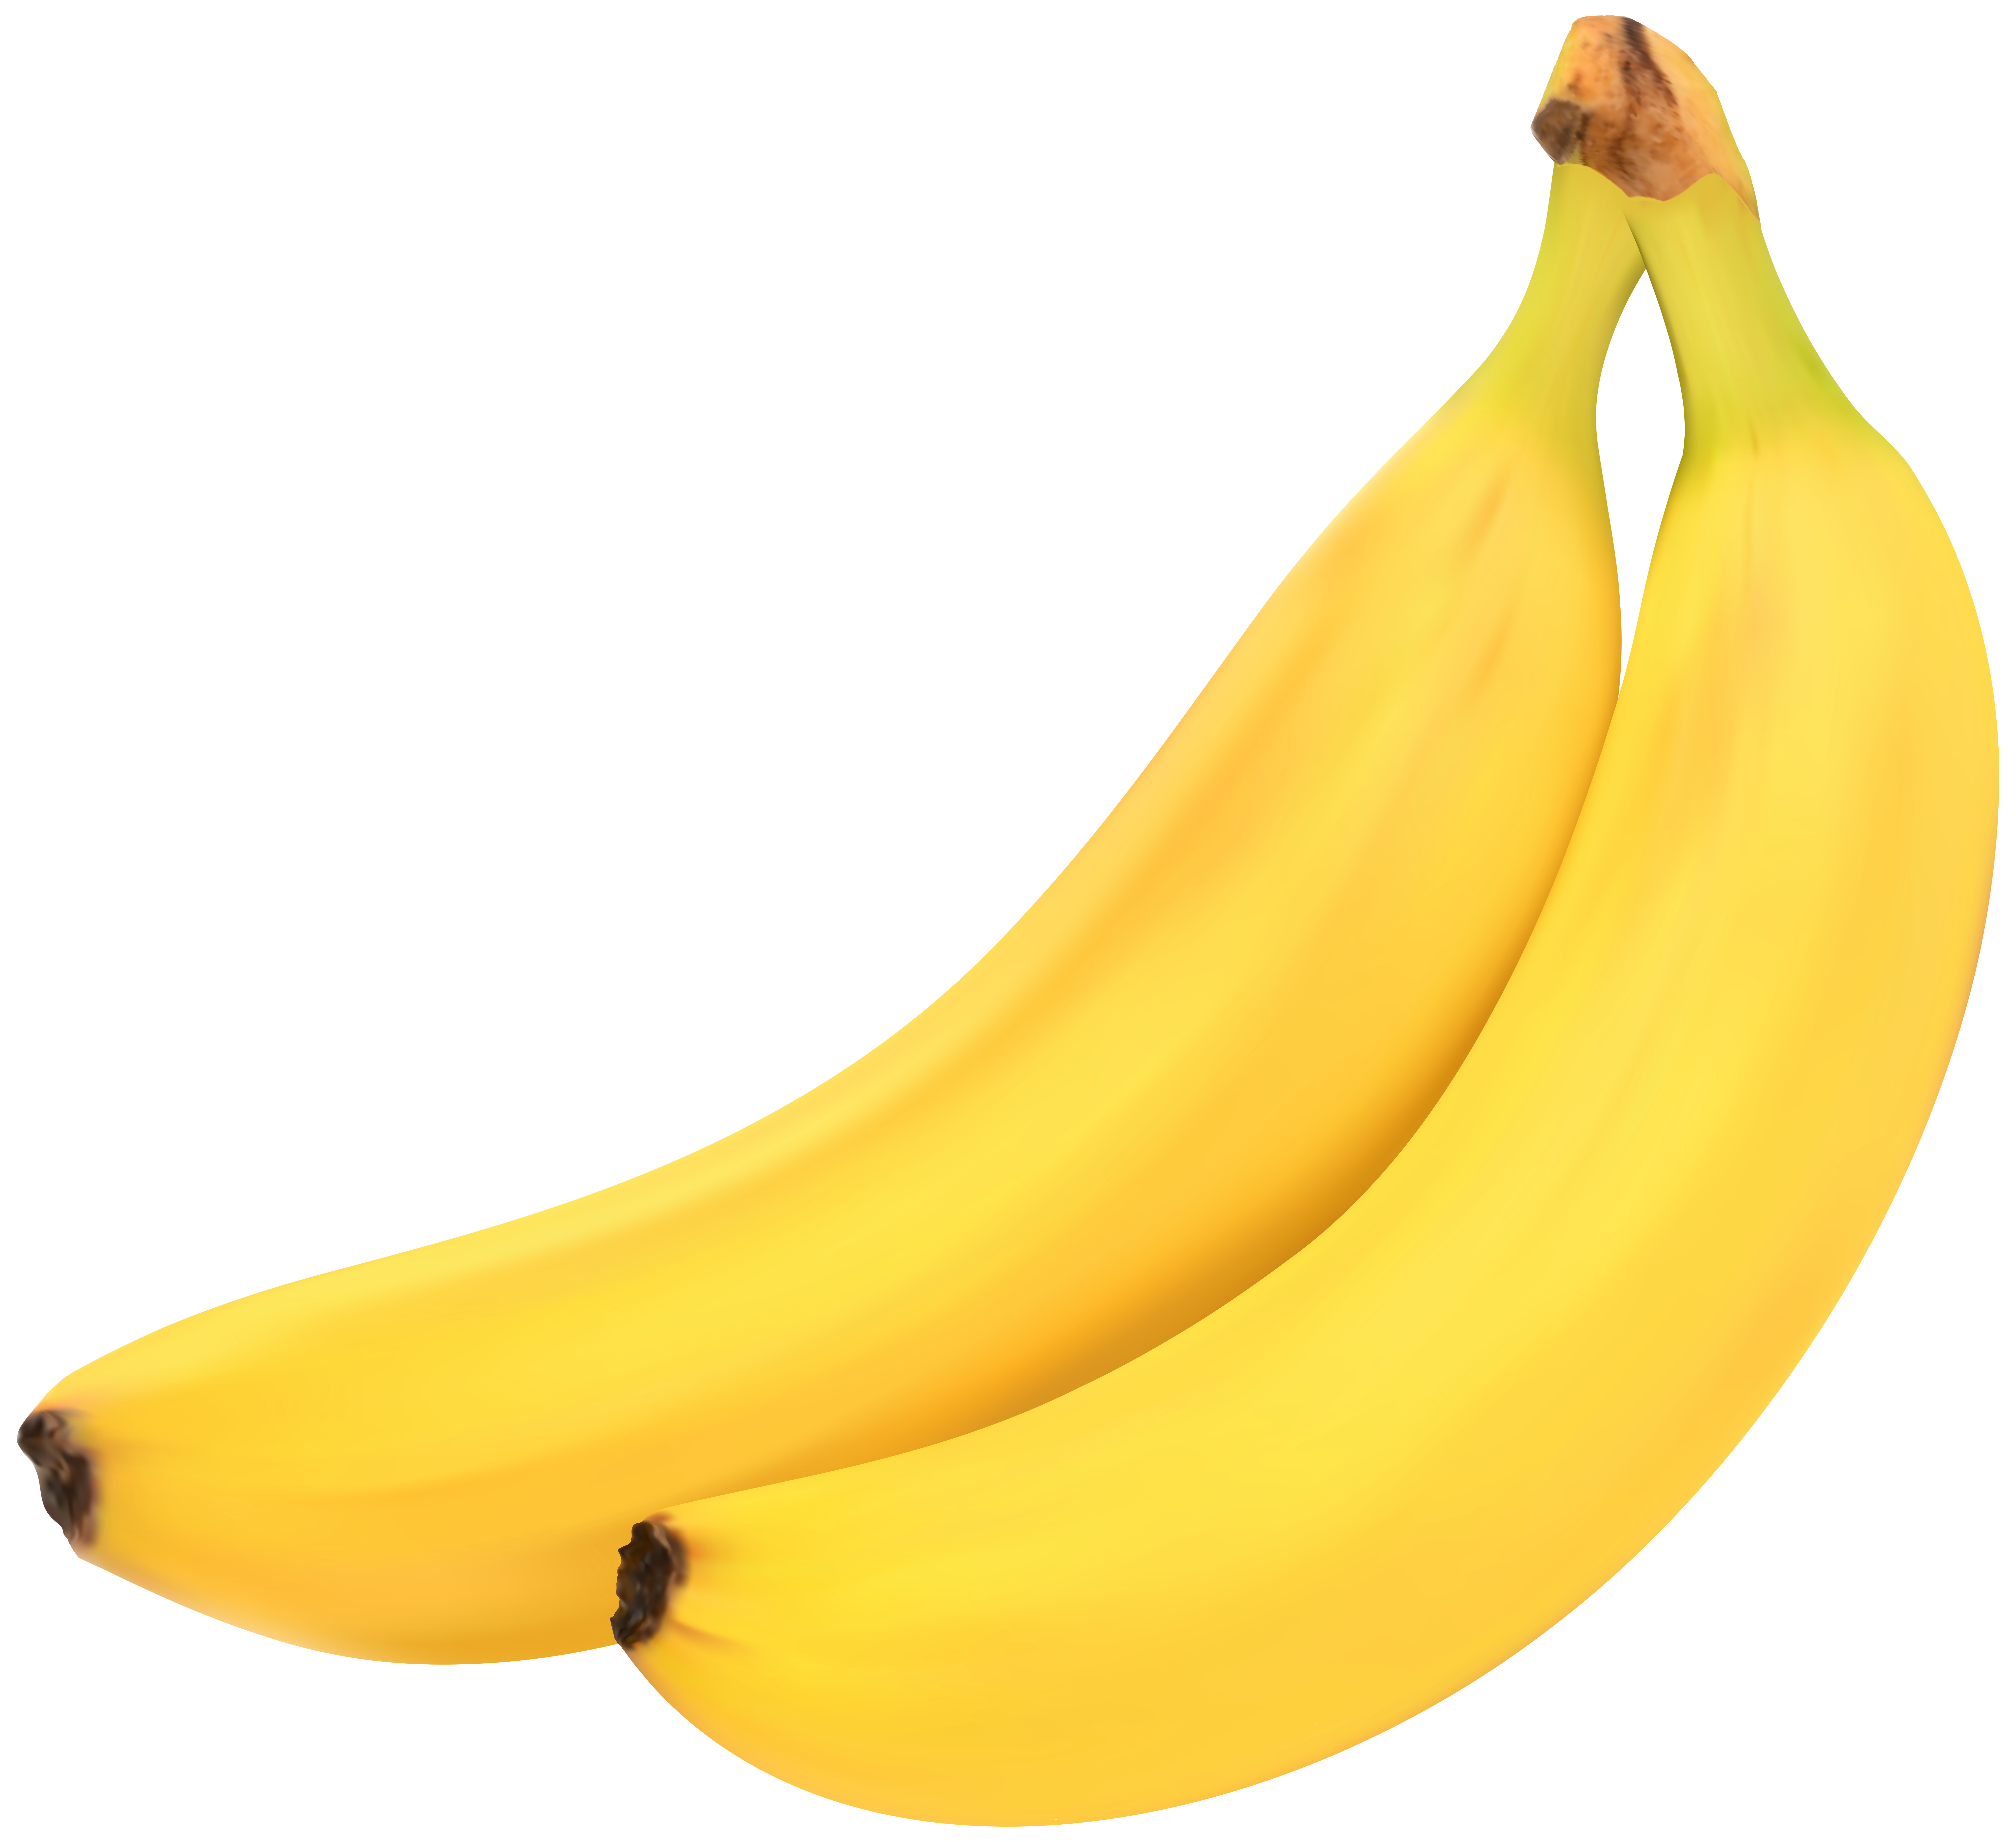 clipart banana saba banana